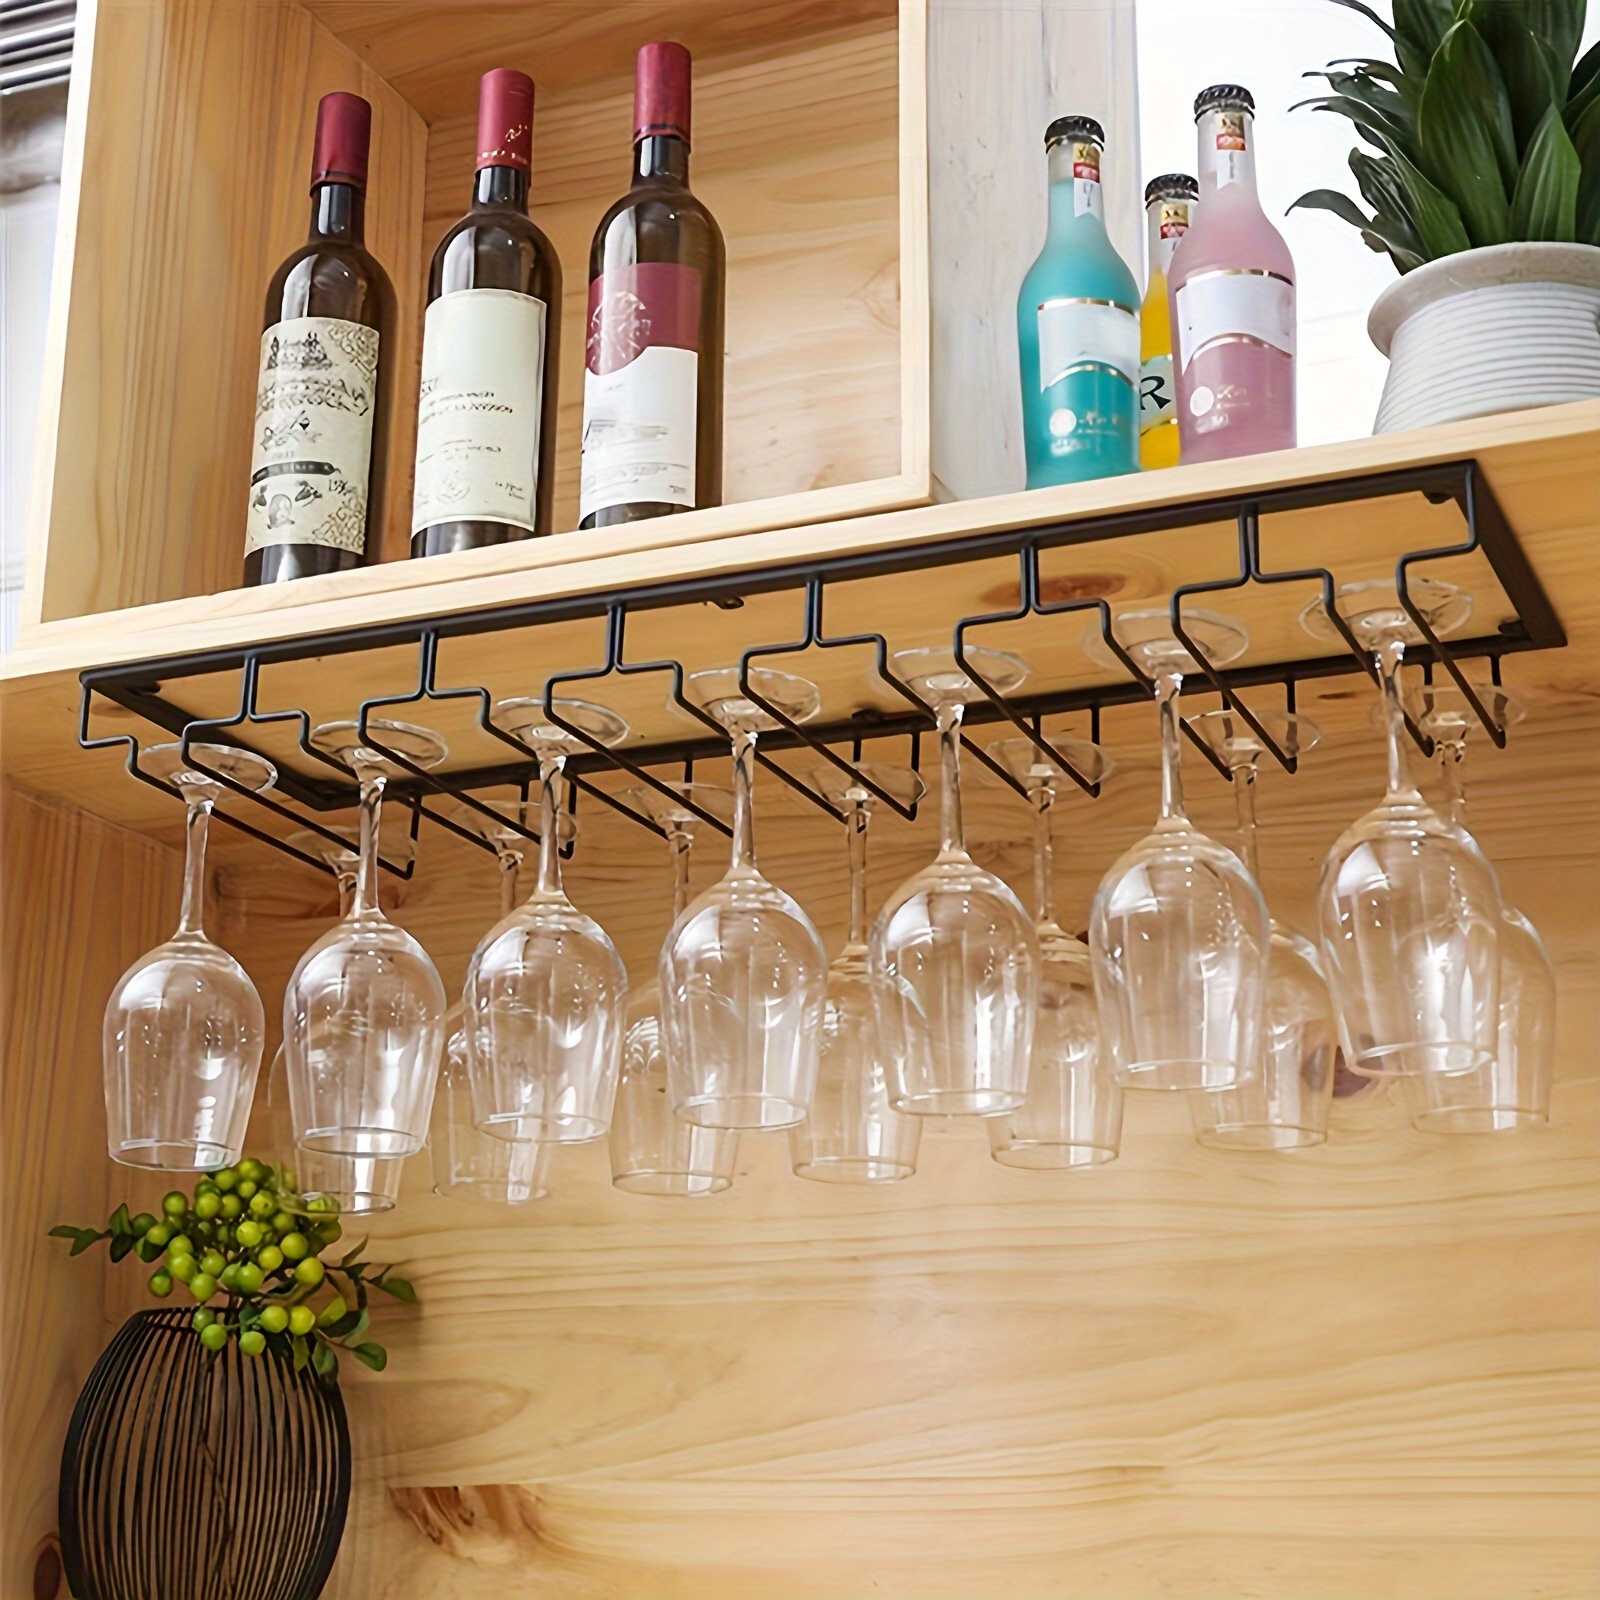 Estante para copas de vino, soporte para copas de vino de 11.8 pulgadas,  soporte para copas de vino debajo del estante, estante de acero inoxidable